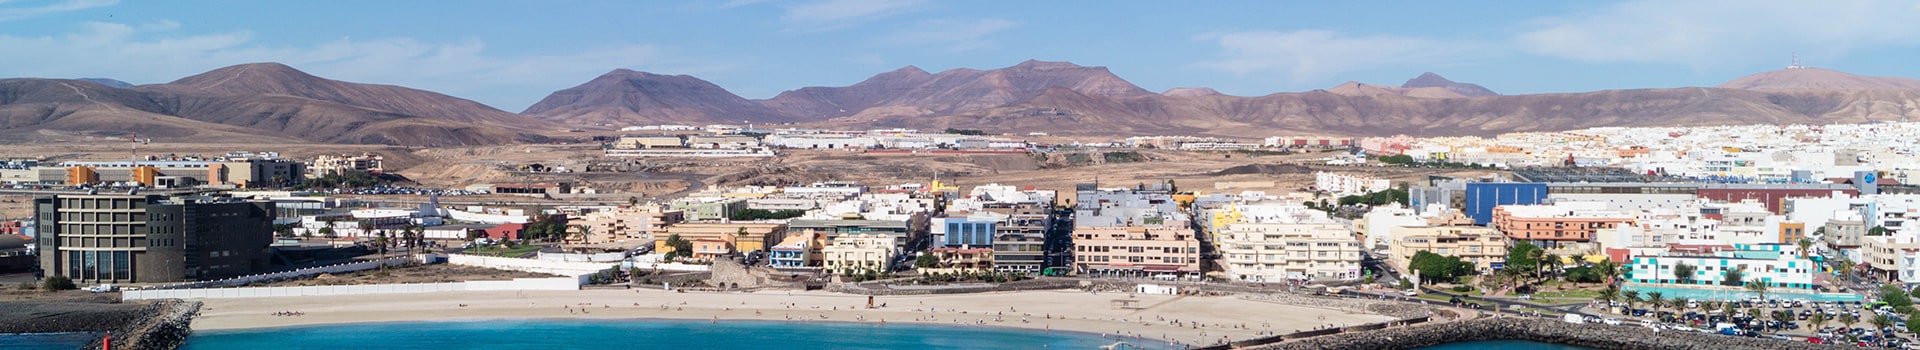 Seville - Fuerteventura